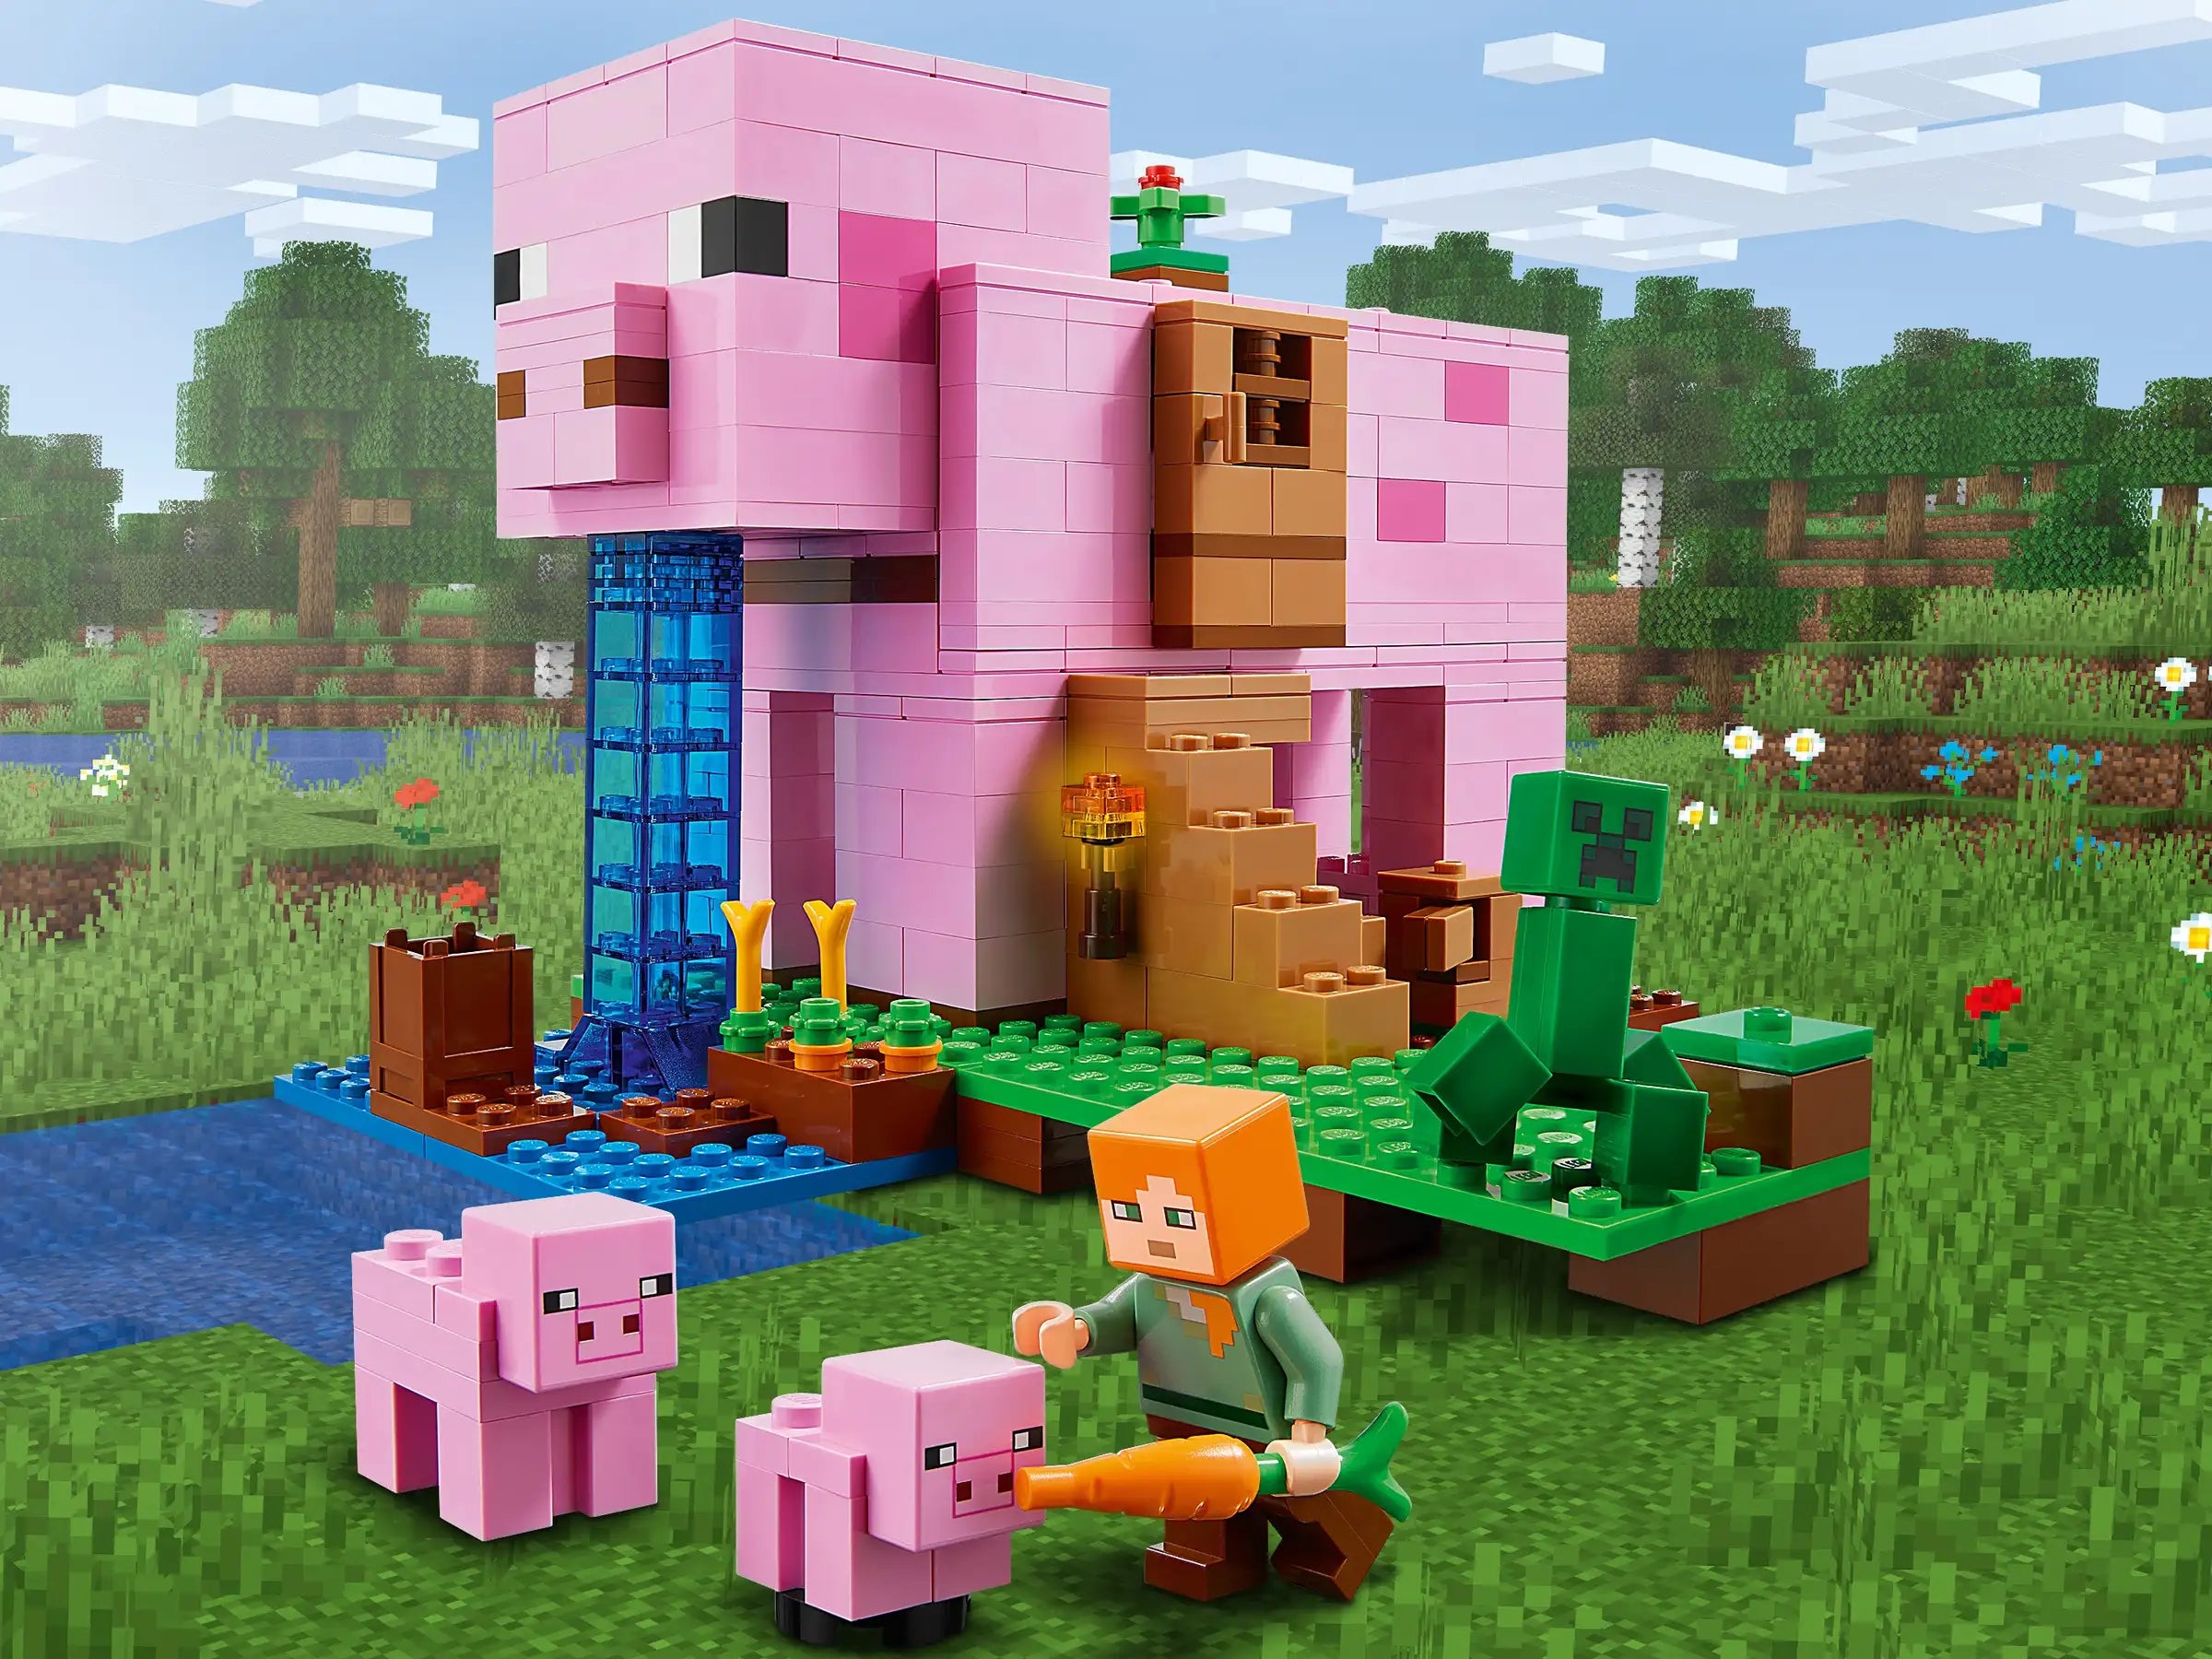 LEGO 21170 Minecraft La Maison Cochon: Jouet de Construction avec